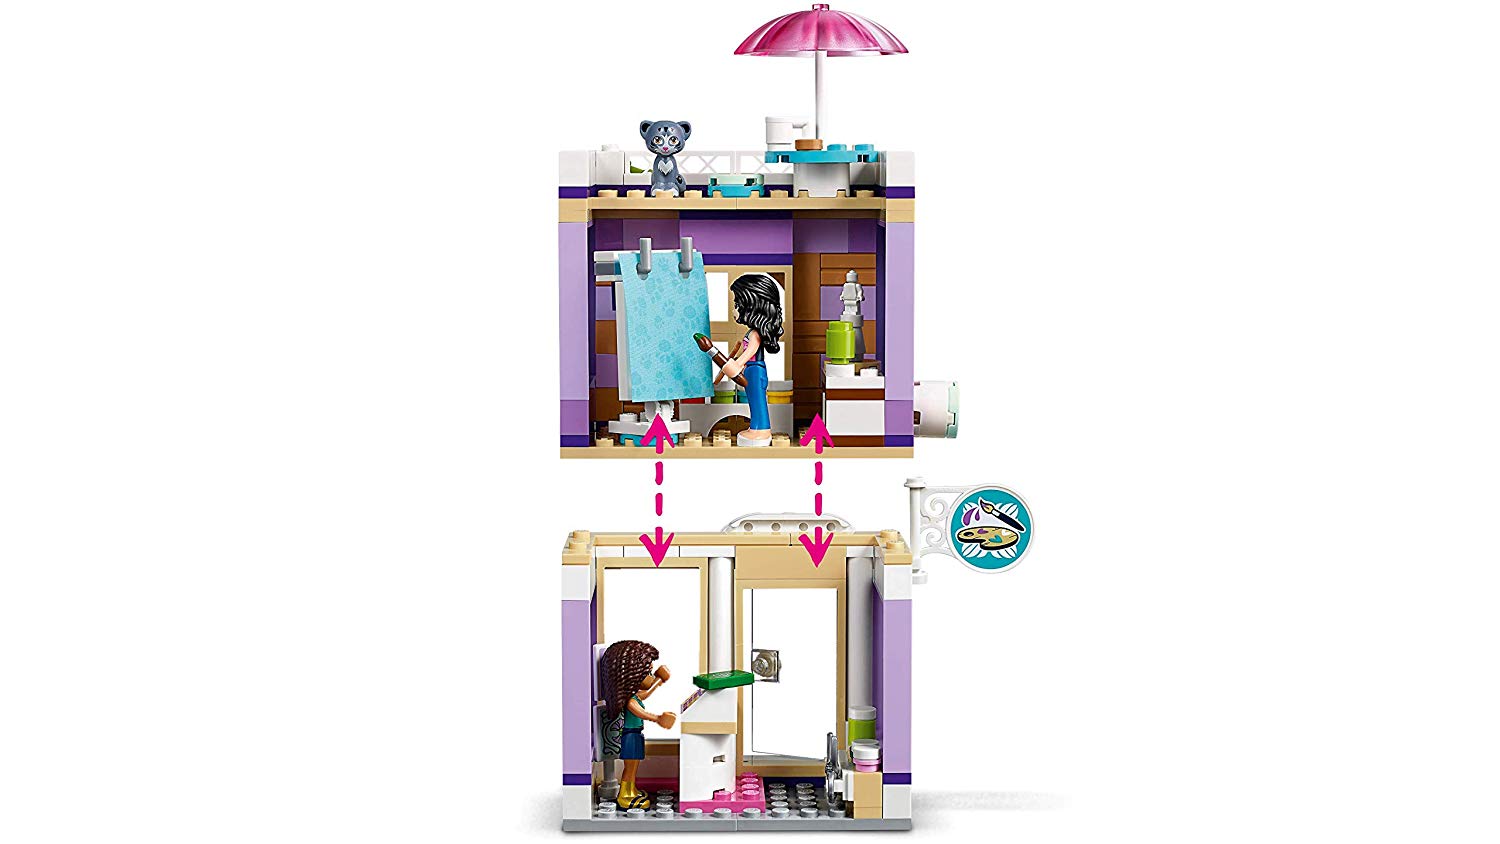 Конструктор LEGO Friends - Художественная студия Эммы